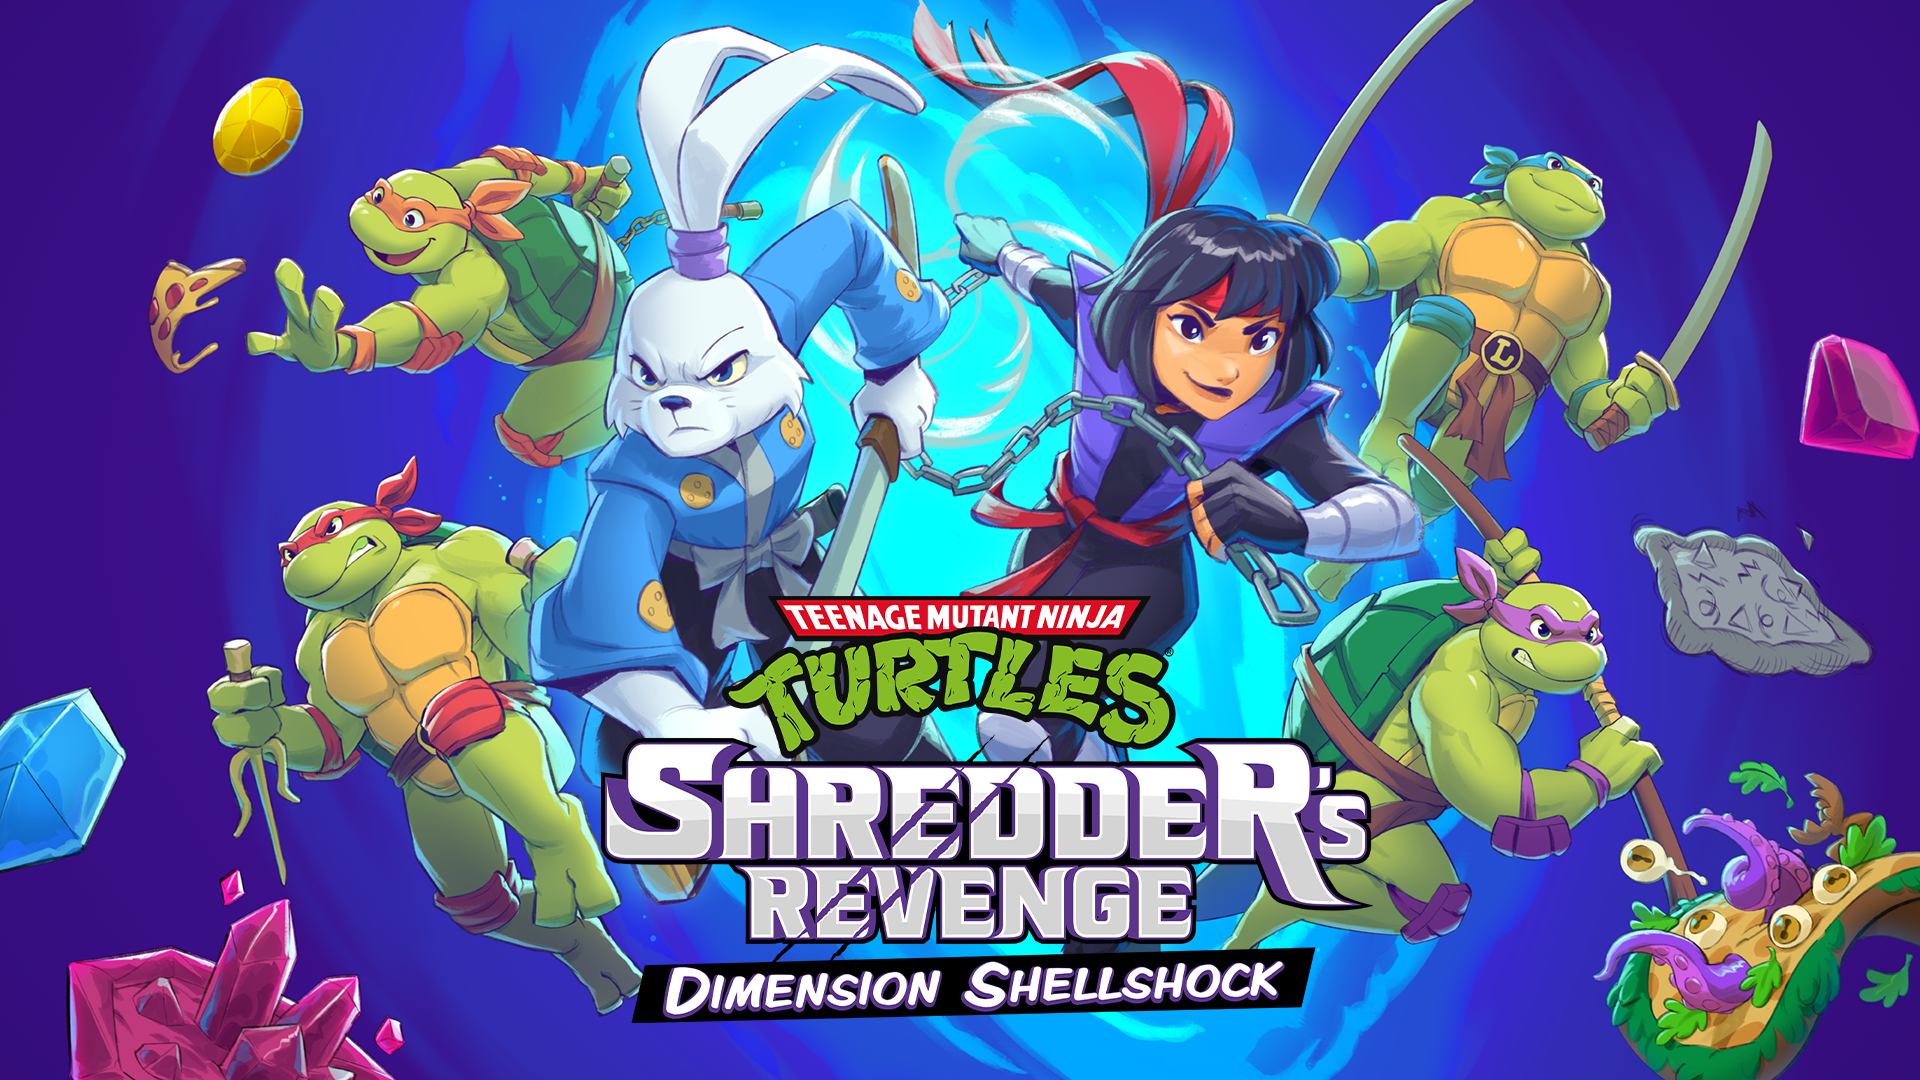 Teenage Mutant Ninja Turtles: Shredder’s Revenge - Dimension Shellshock DLC